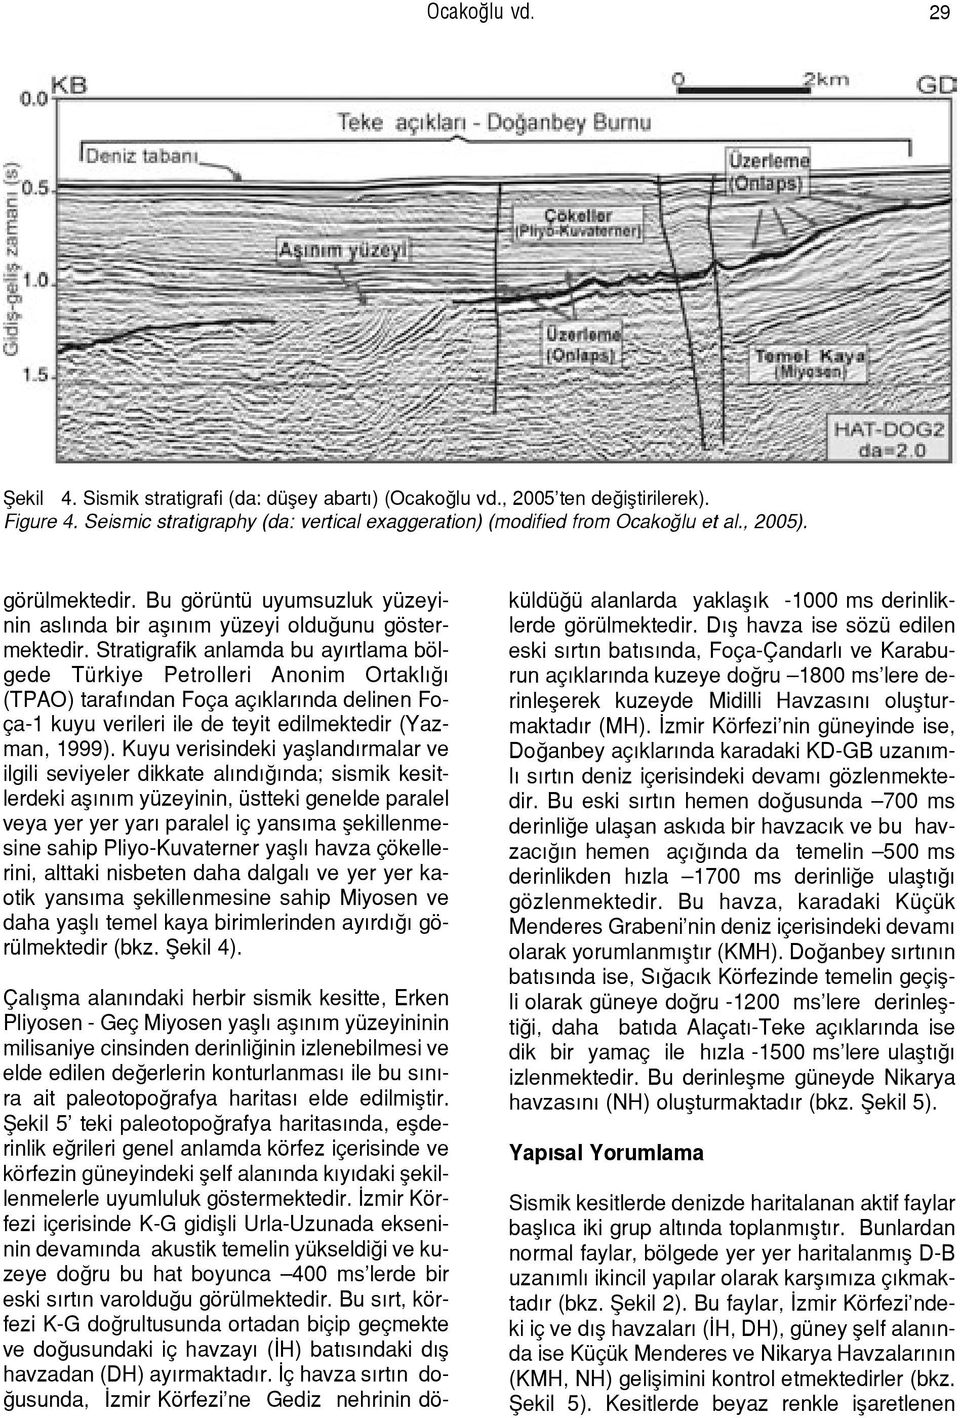 Stratigrafik anlamda bu ay rtlama bölgede Türkiye Petrolleri Anonim Ortakl (TPAO) taraf ndan Foça aç klar nda delinen Foça-1 kuyu verileri ile de teyit edilmektedir (Yazman, 1999).